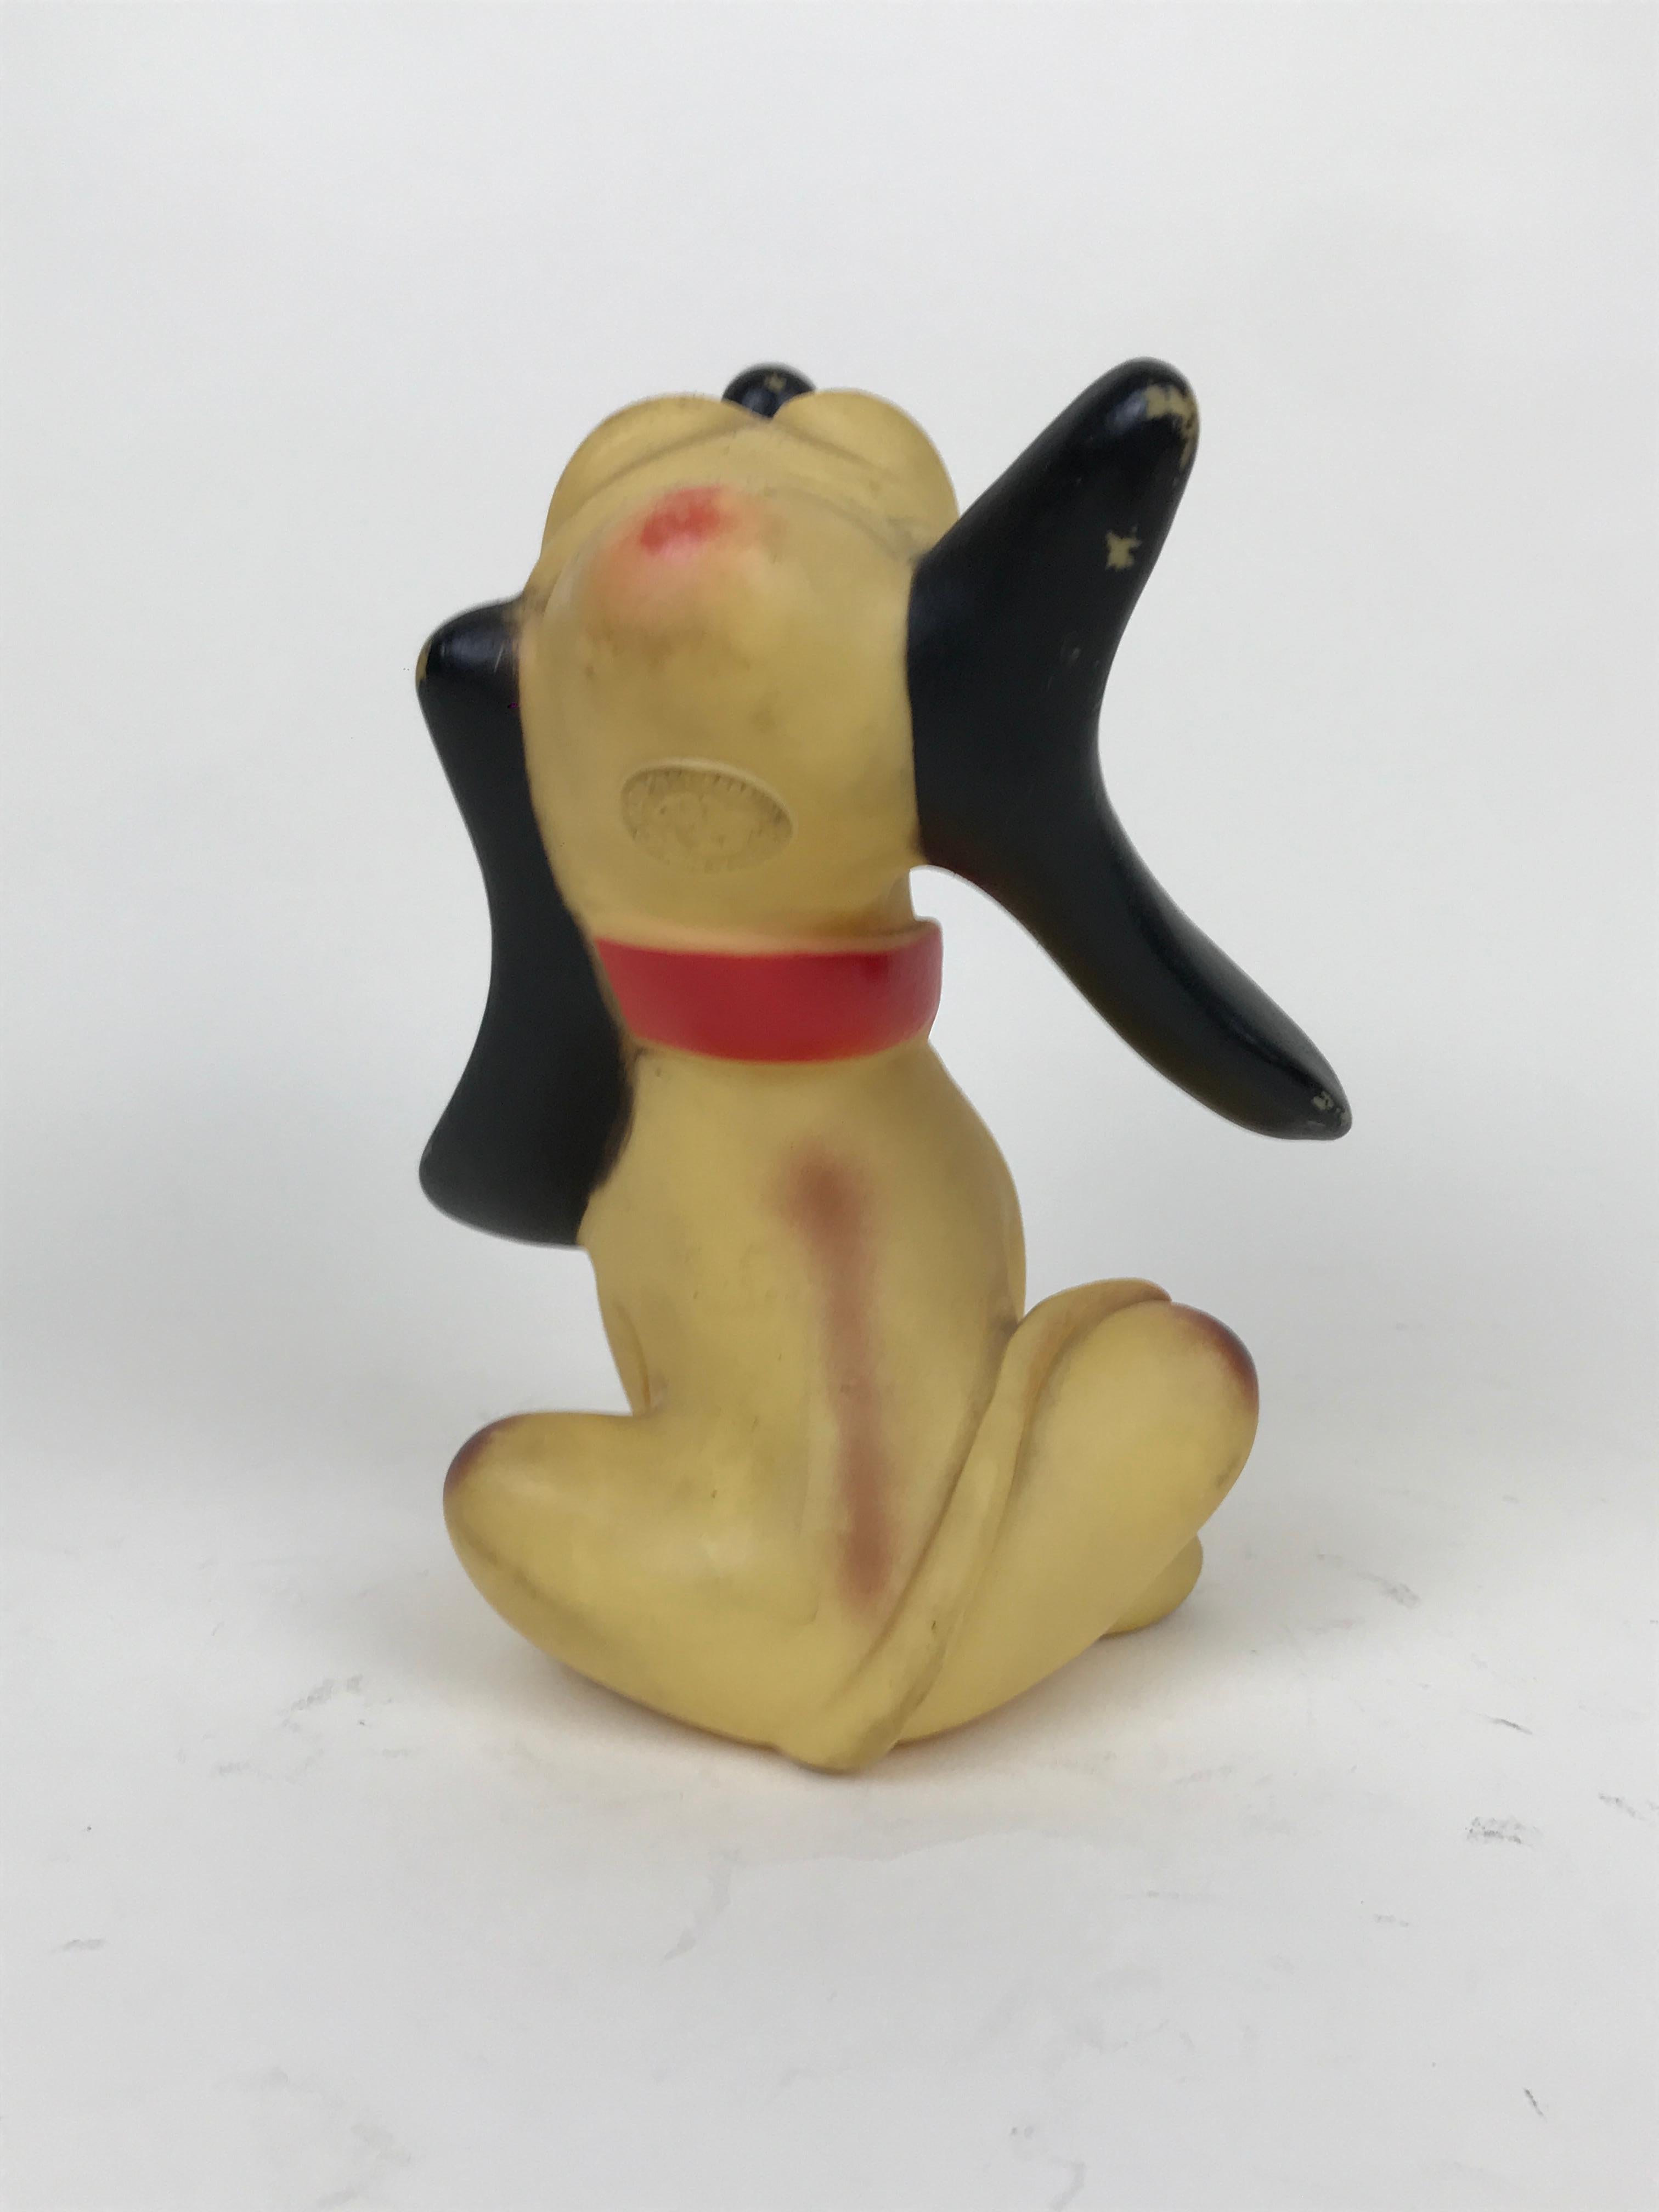 Italian 1960s Vintage Original Disney Pluto Rubber Squeak Toy Made in Italy Ledraplastic